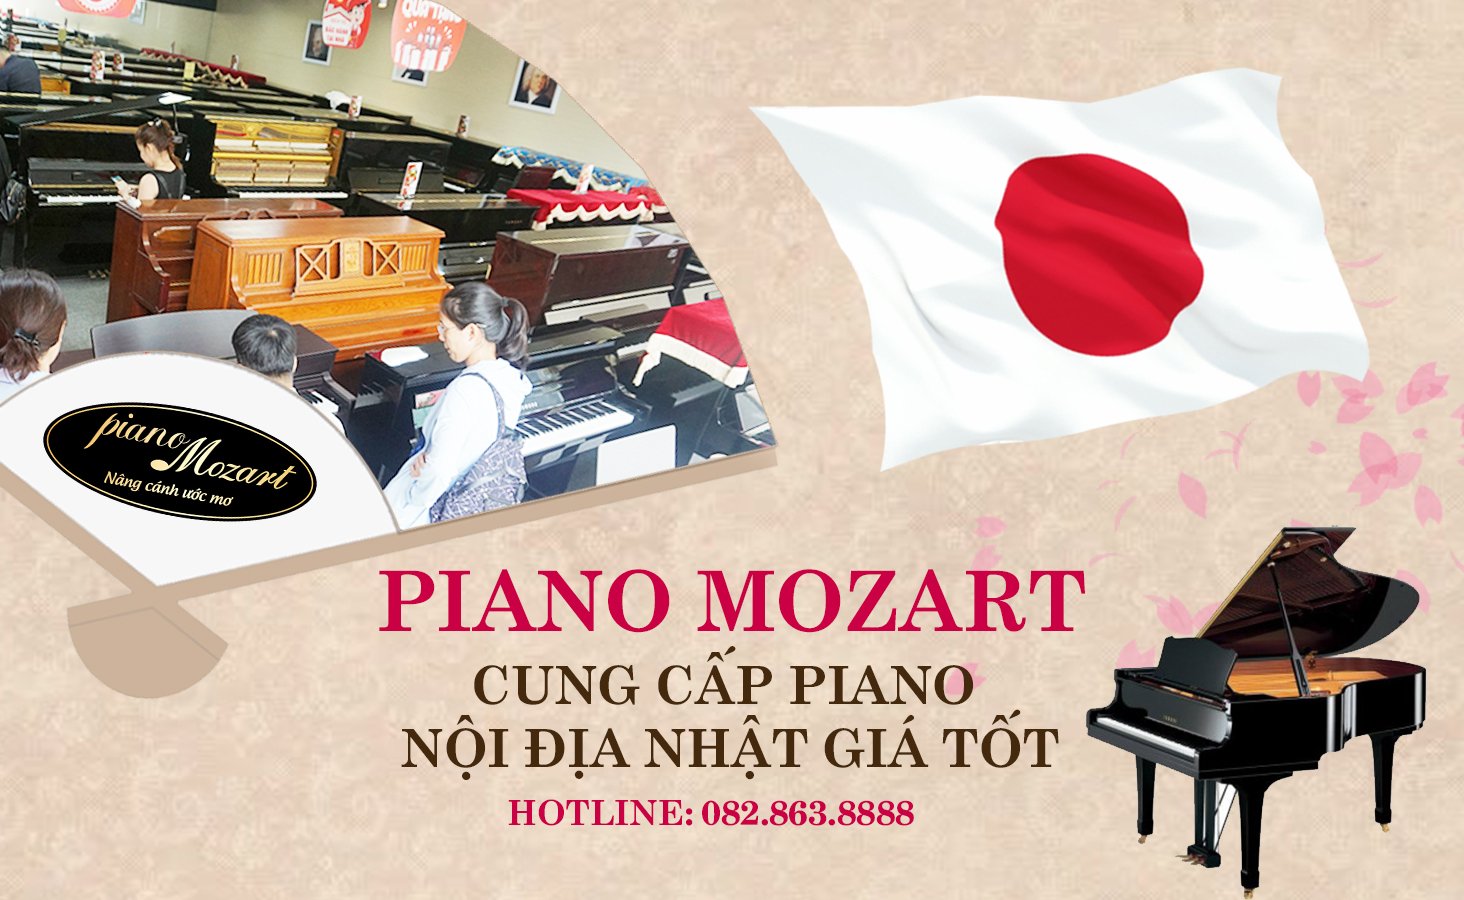 showroom piano chinh hang nhat ban